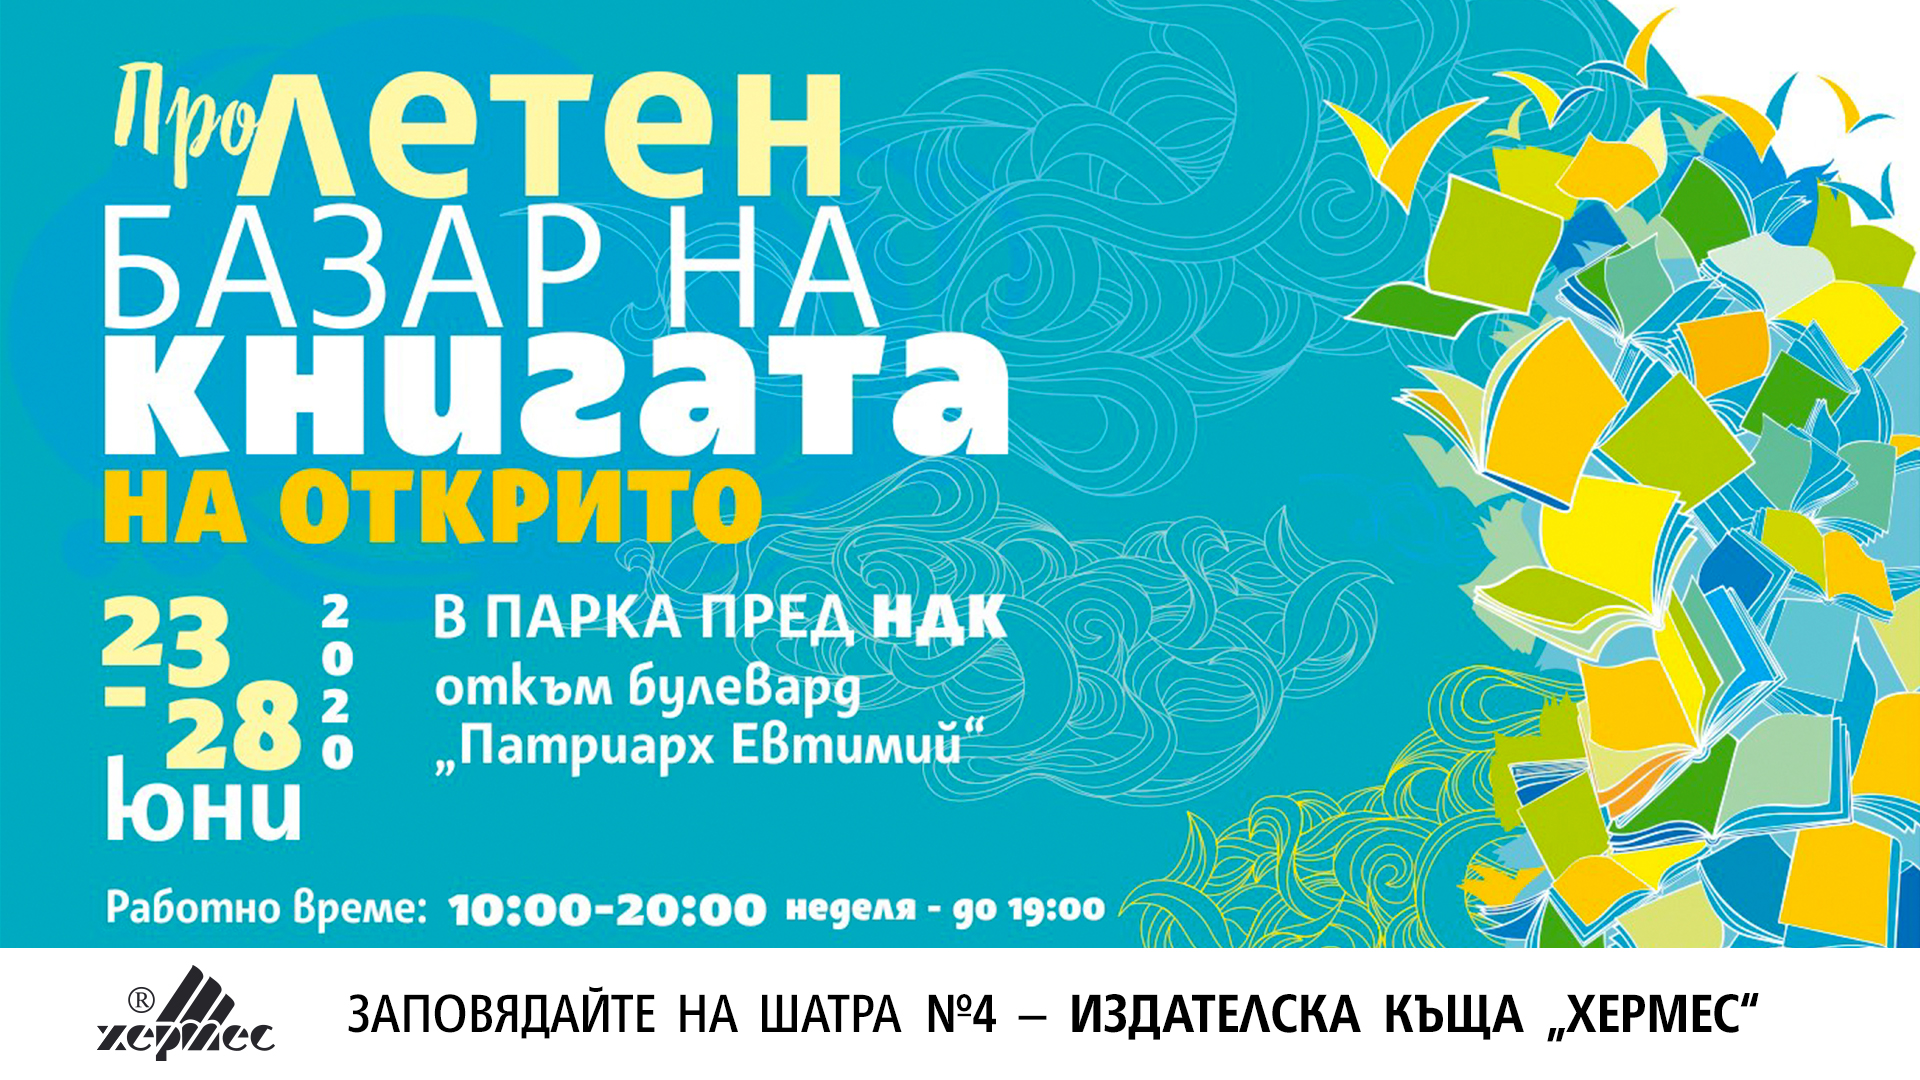 Заповядайте на щанда на „Хермес“ на „ПроЛетен базар на книгата“ в София 2020!